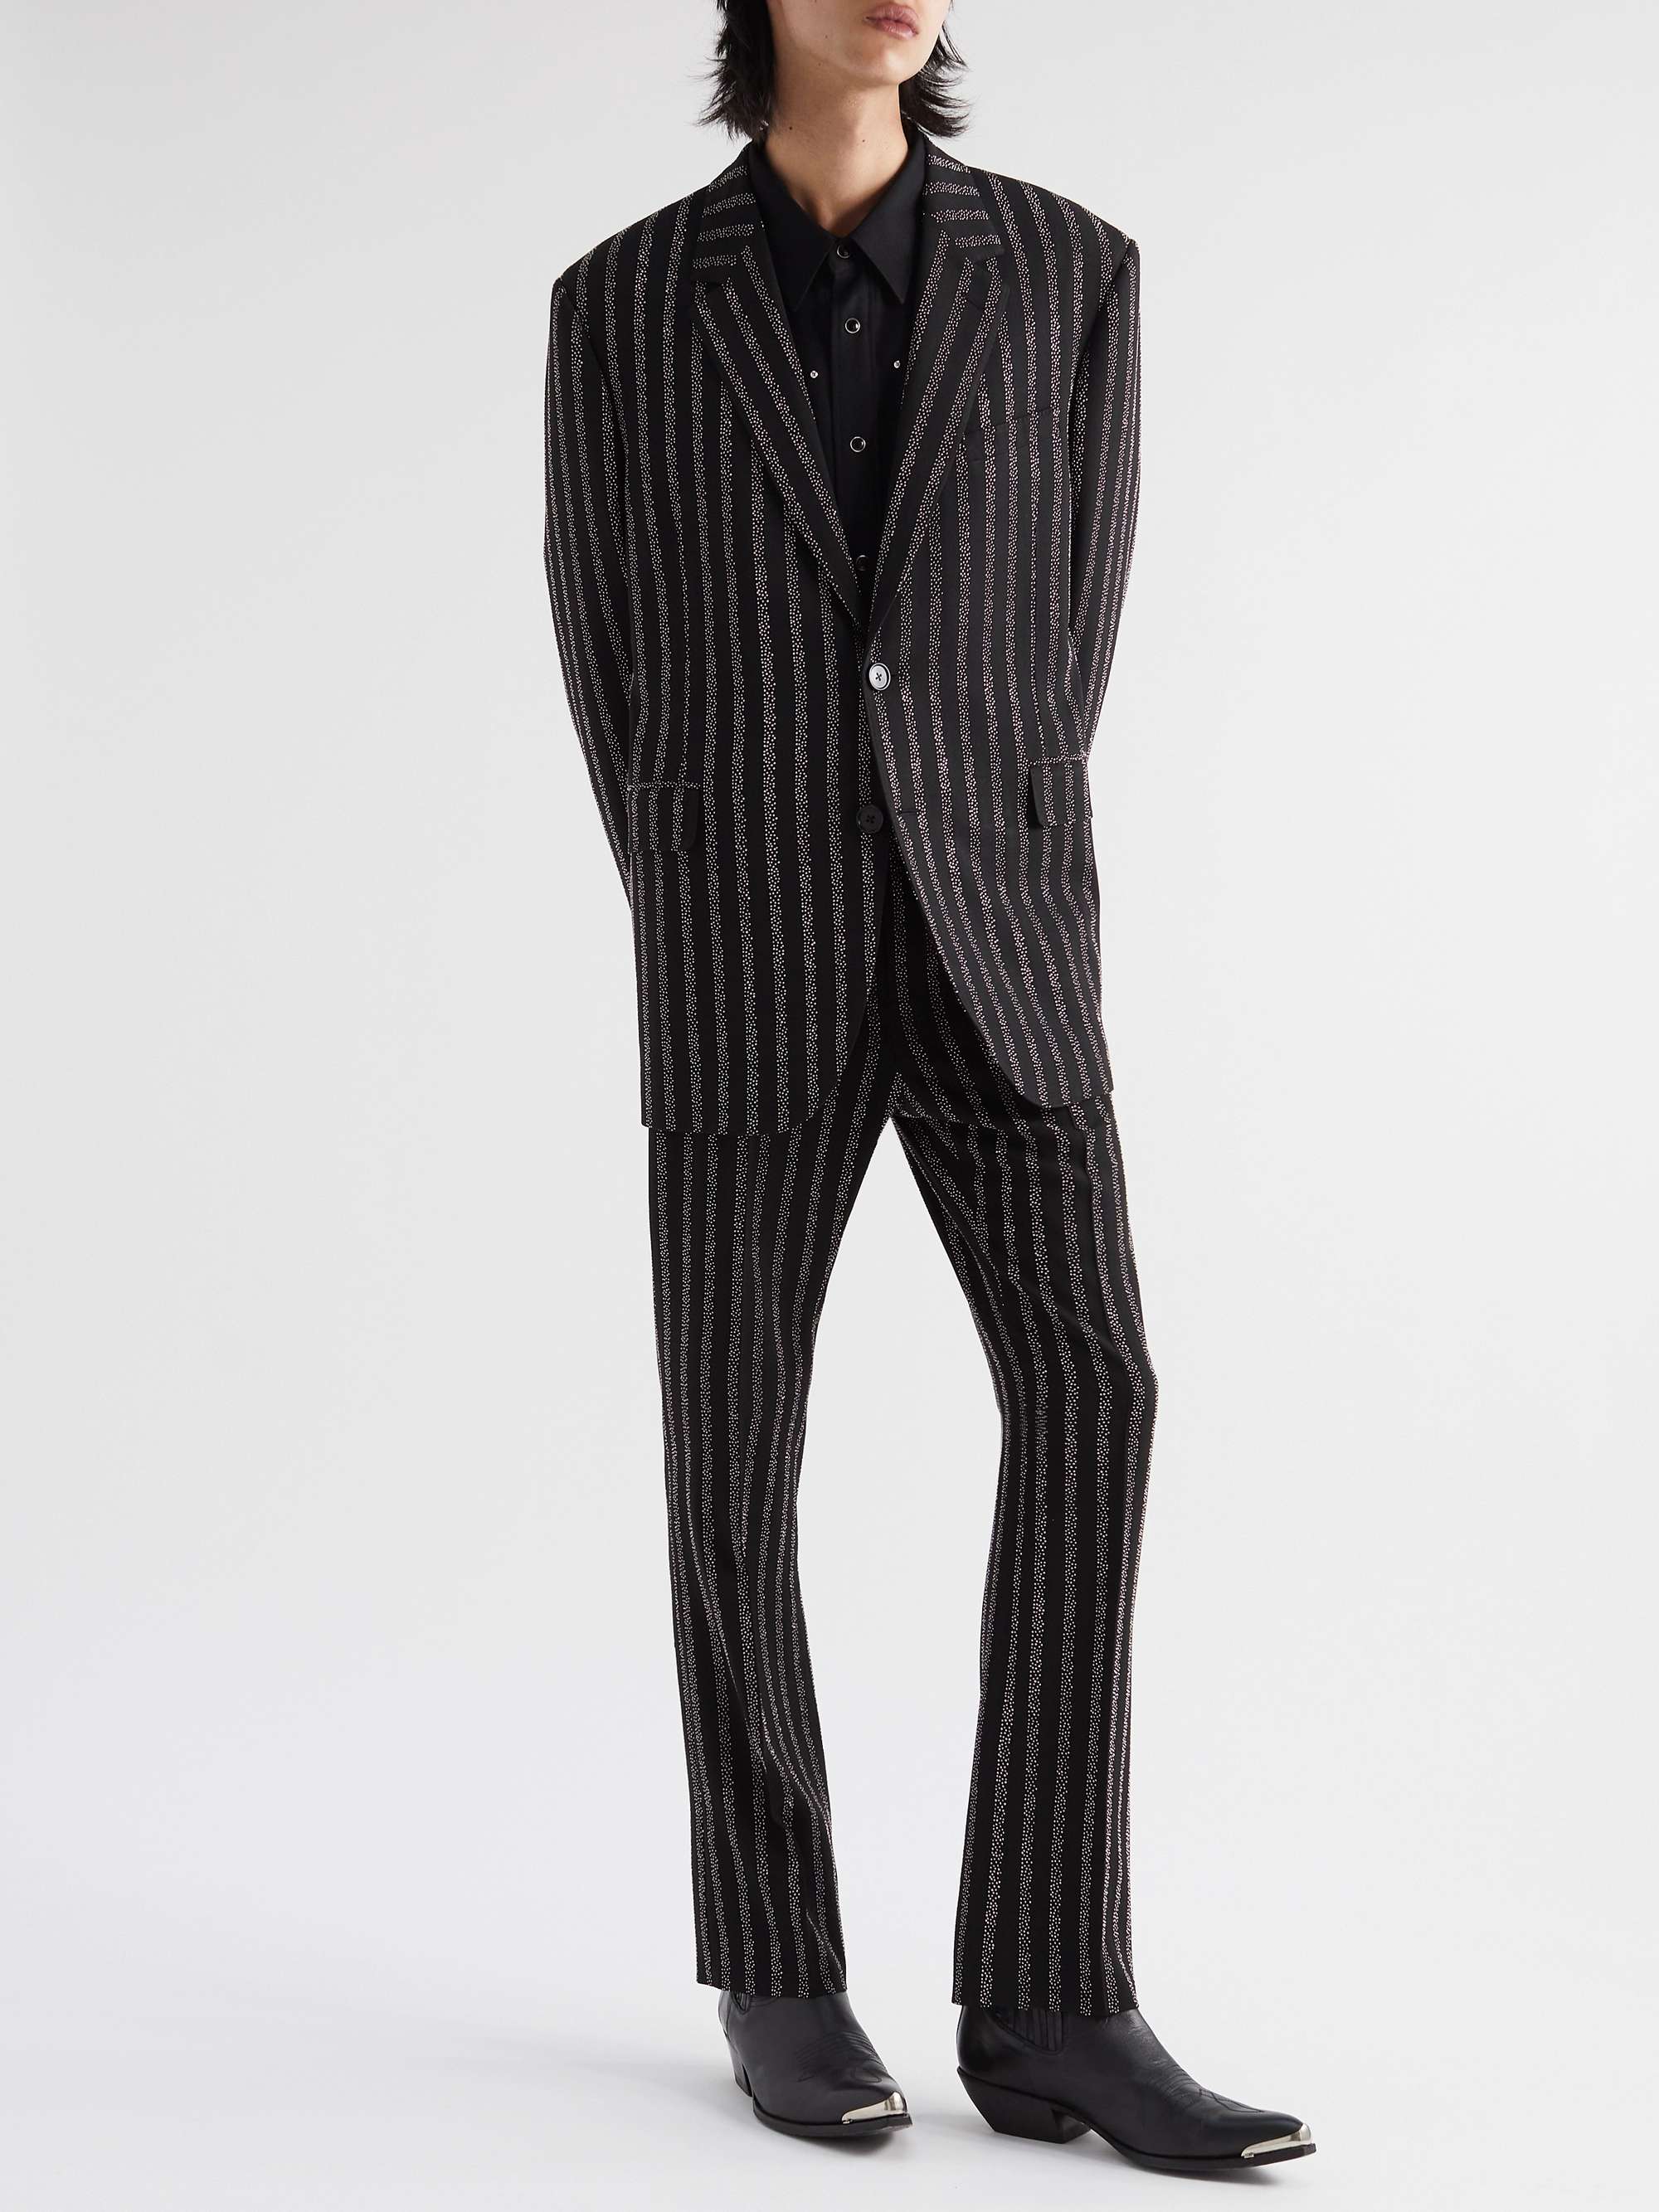 CELINE HOMME Slim-Fit Embellished Striped Crepe Trousers